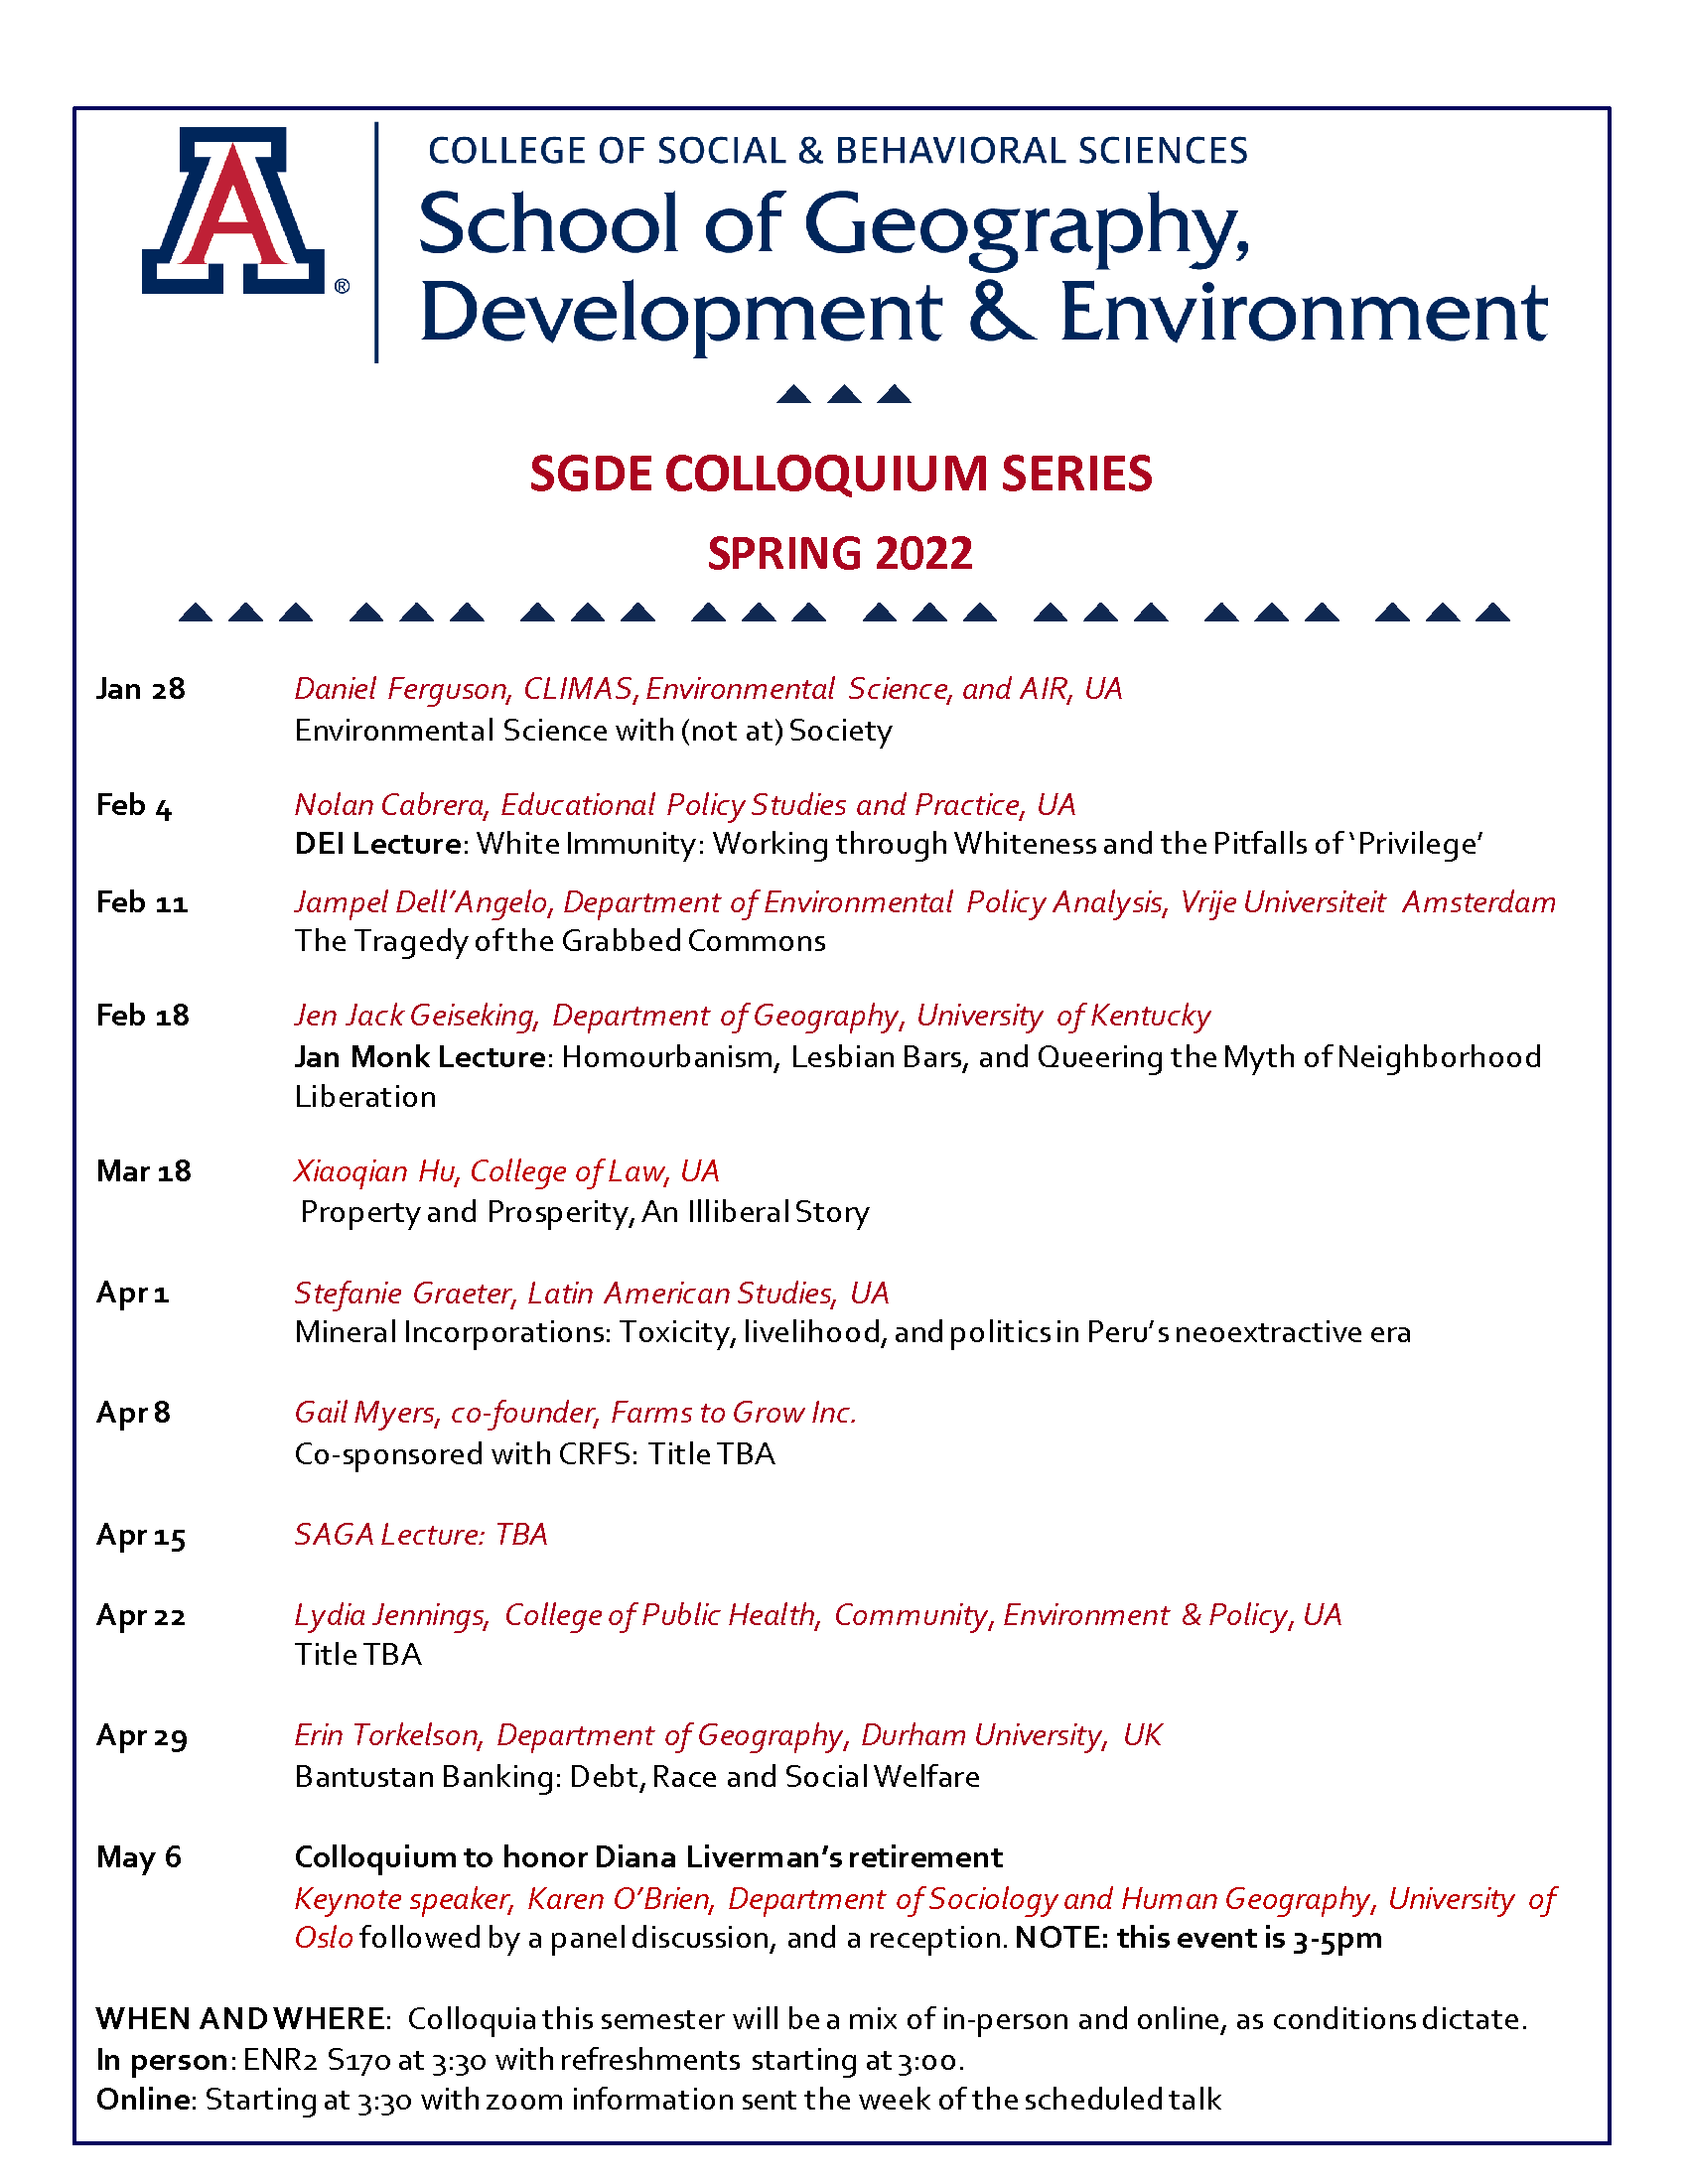 SGDE Spring 2022 Colloquium Schedule